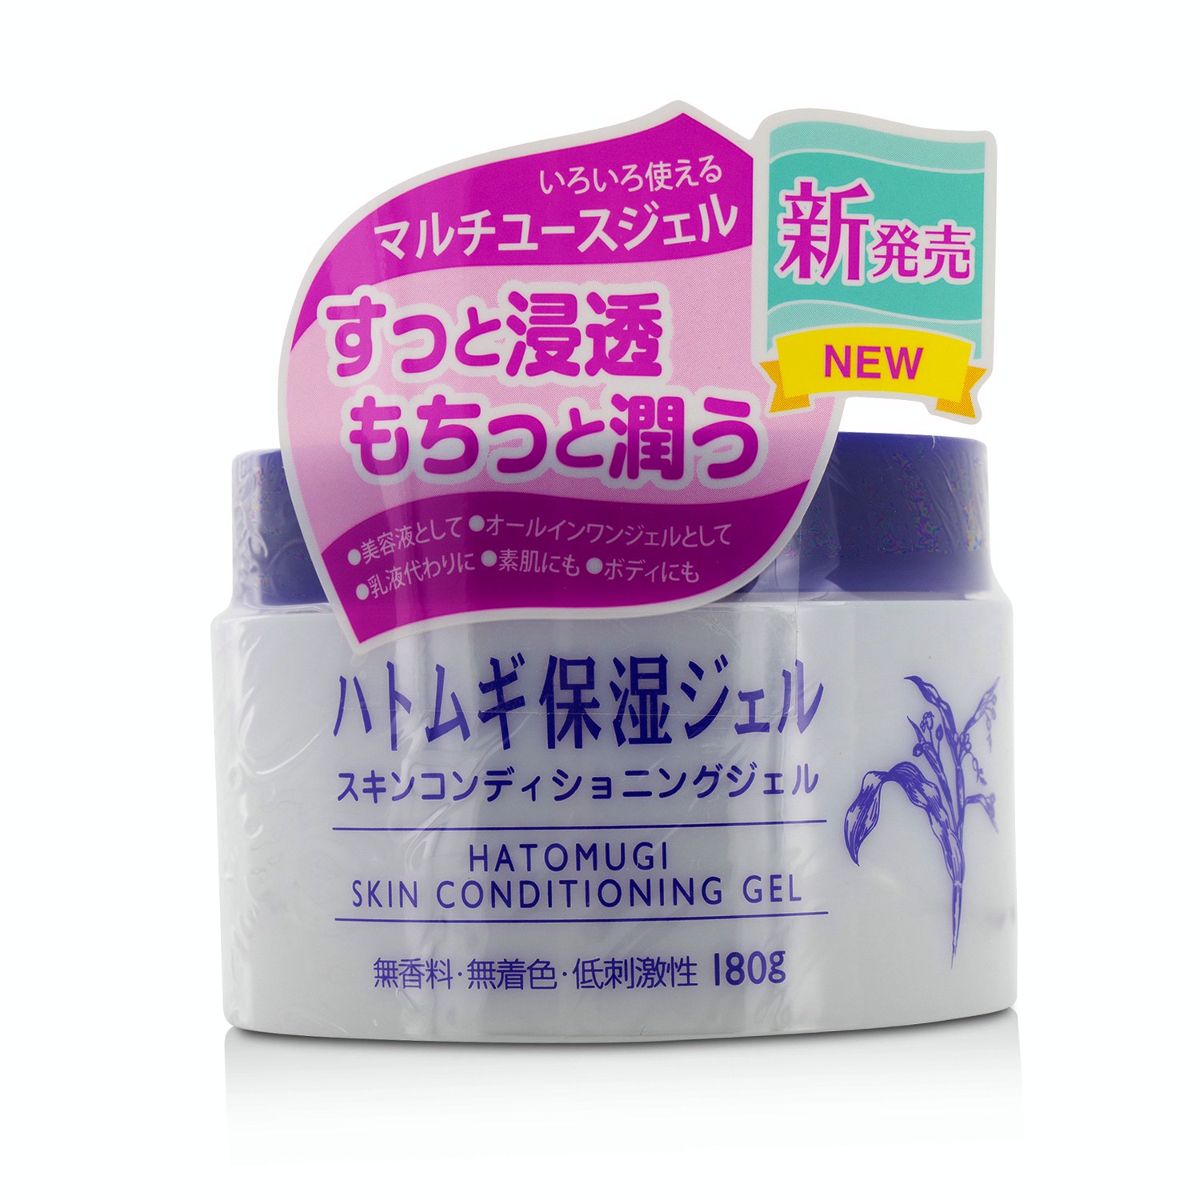 Hatomugi Skin Conditioning Gel I-Mju Image